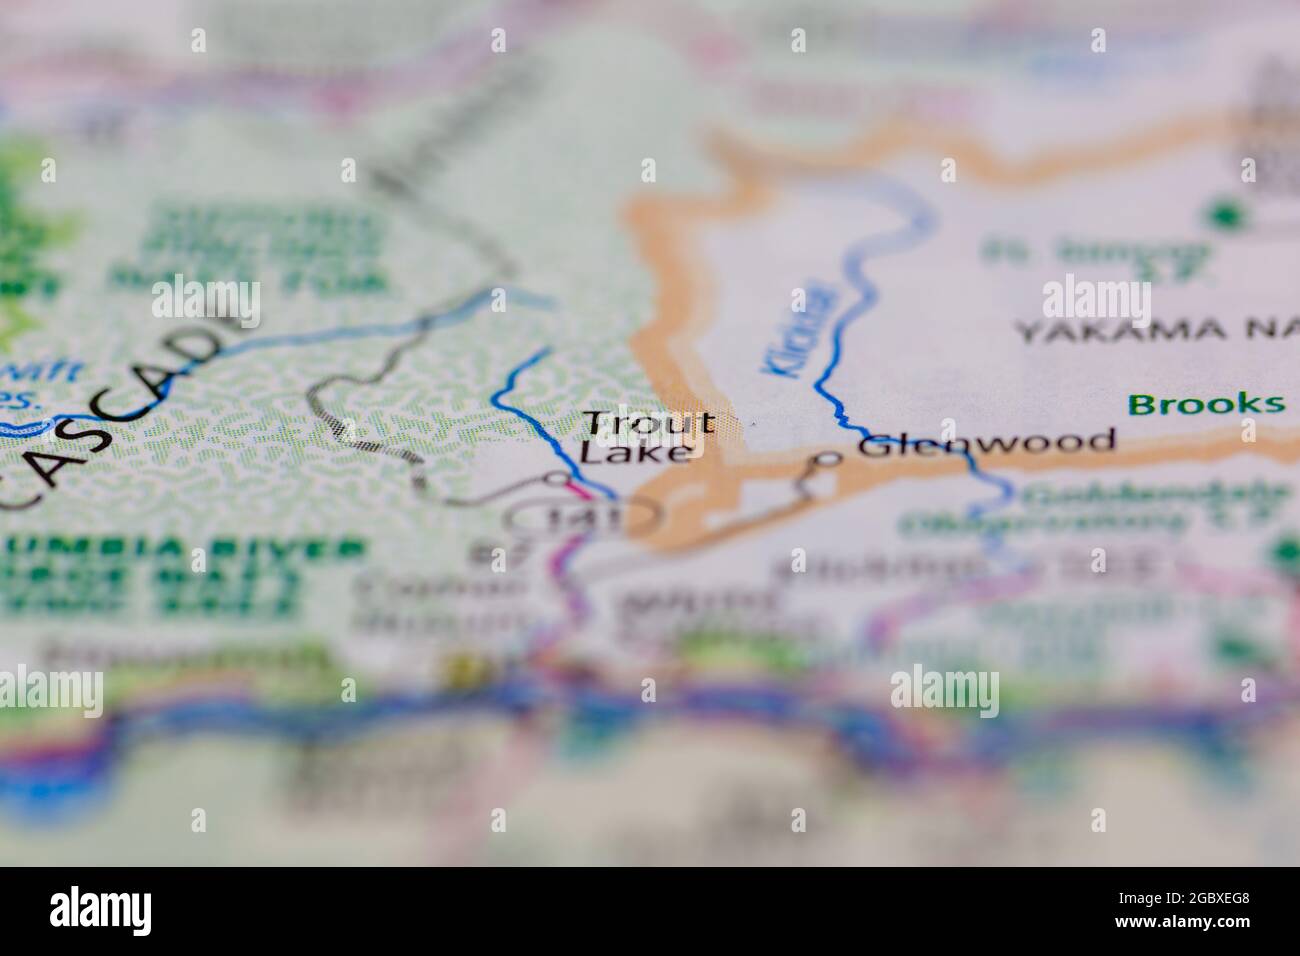 Trout Lake Washington state USA mostrato su una mappa stradale o su una mappa geografica Foto Stock